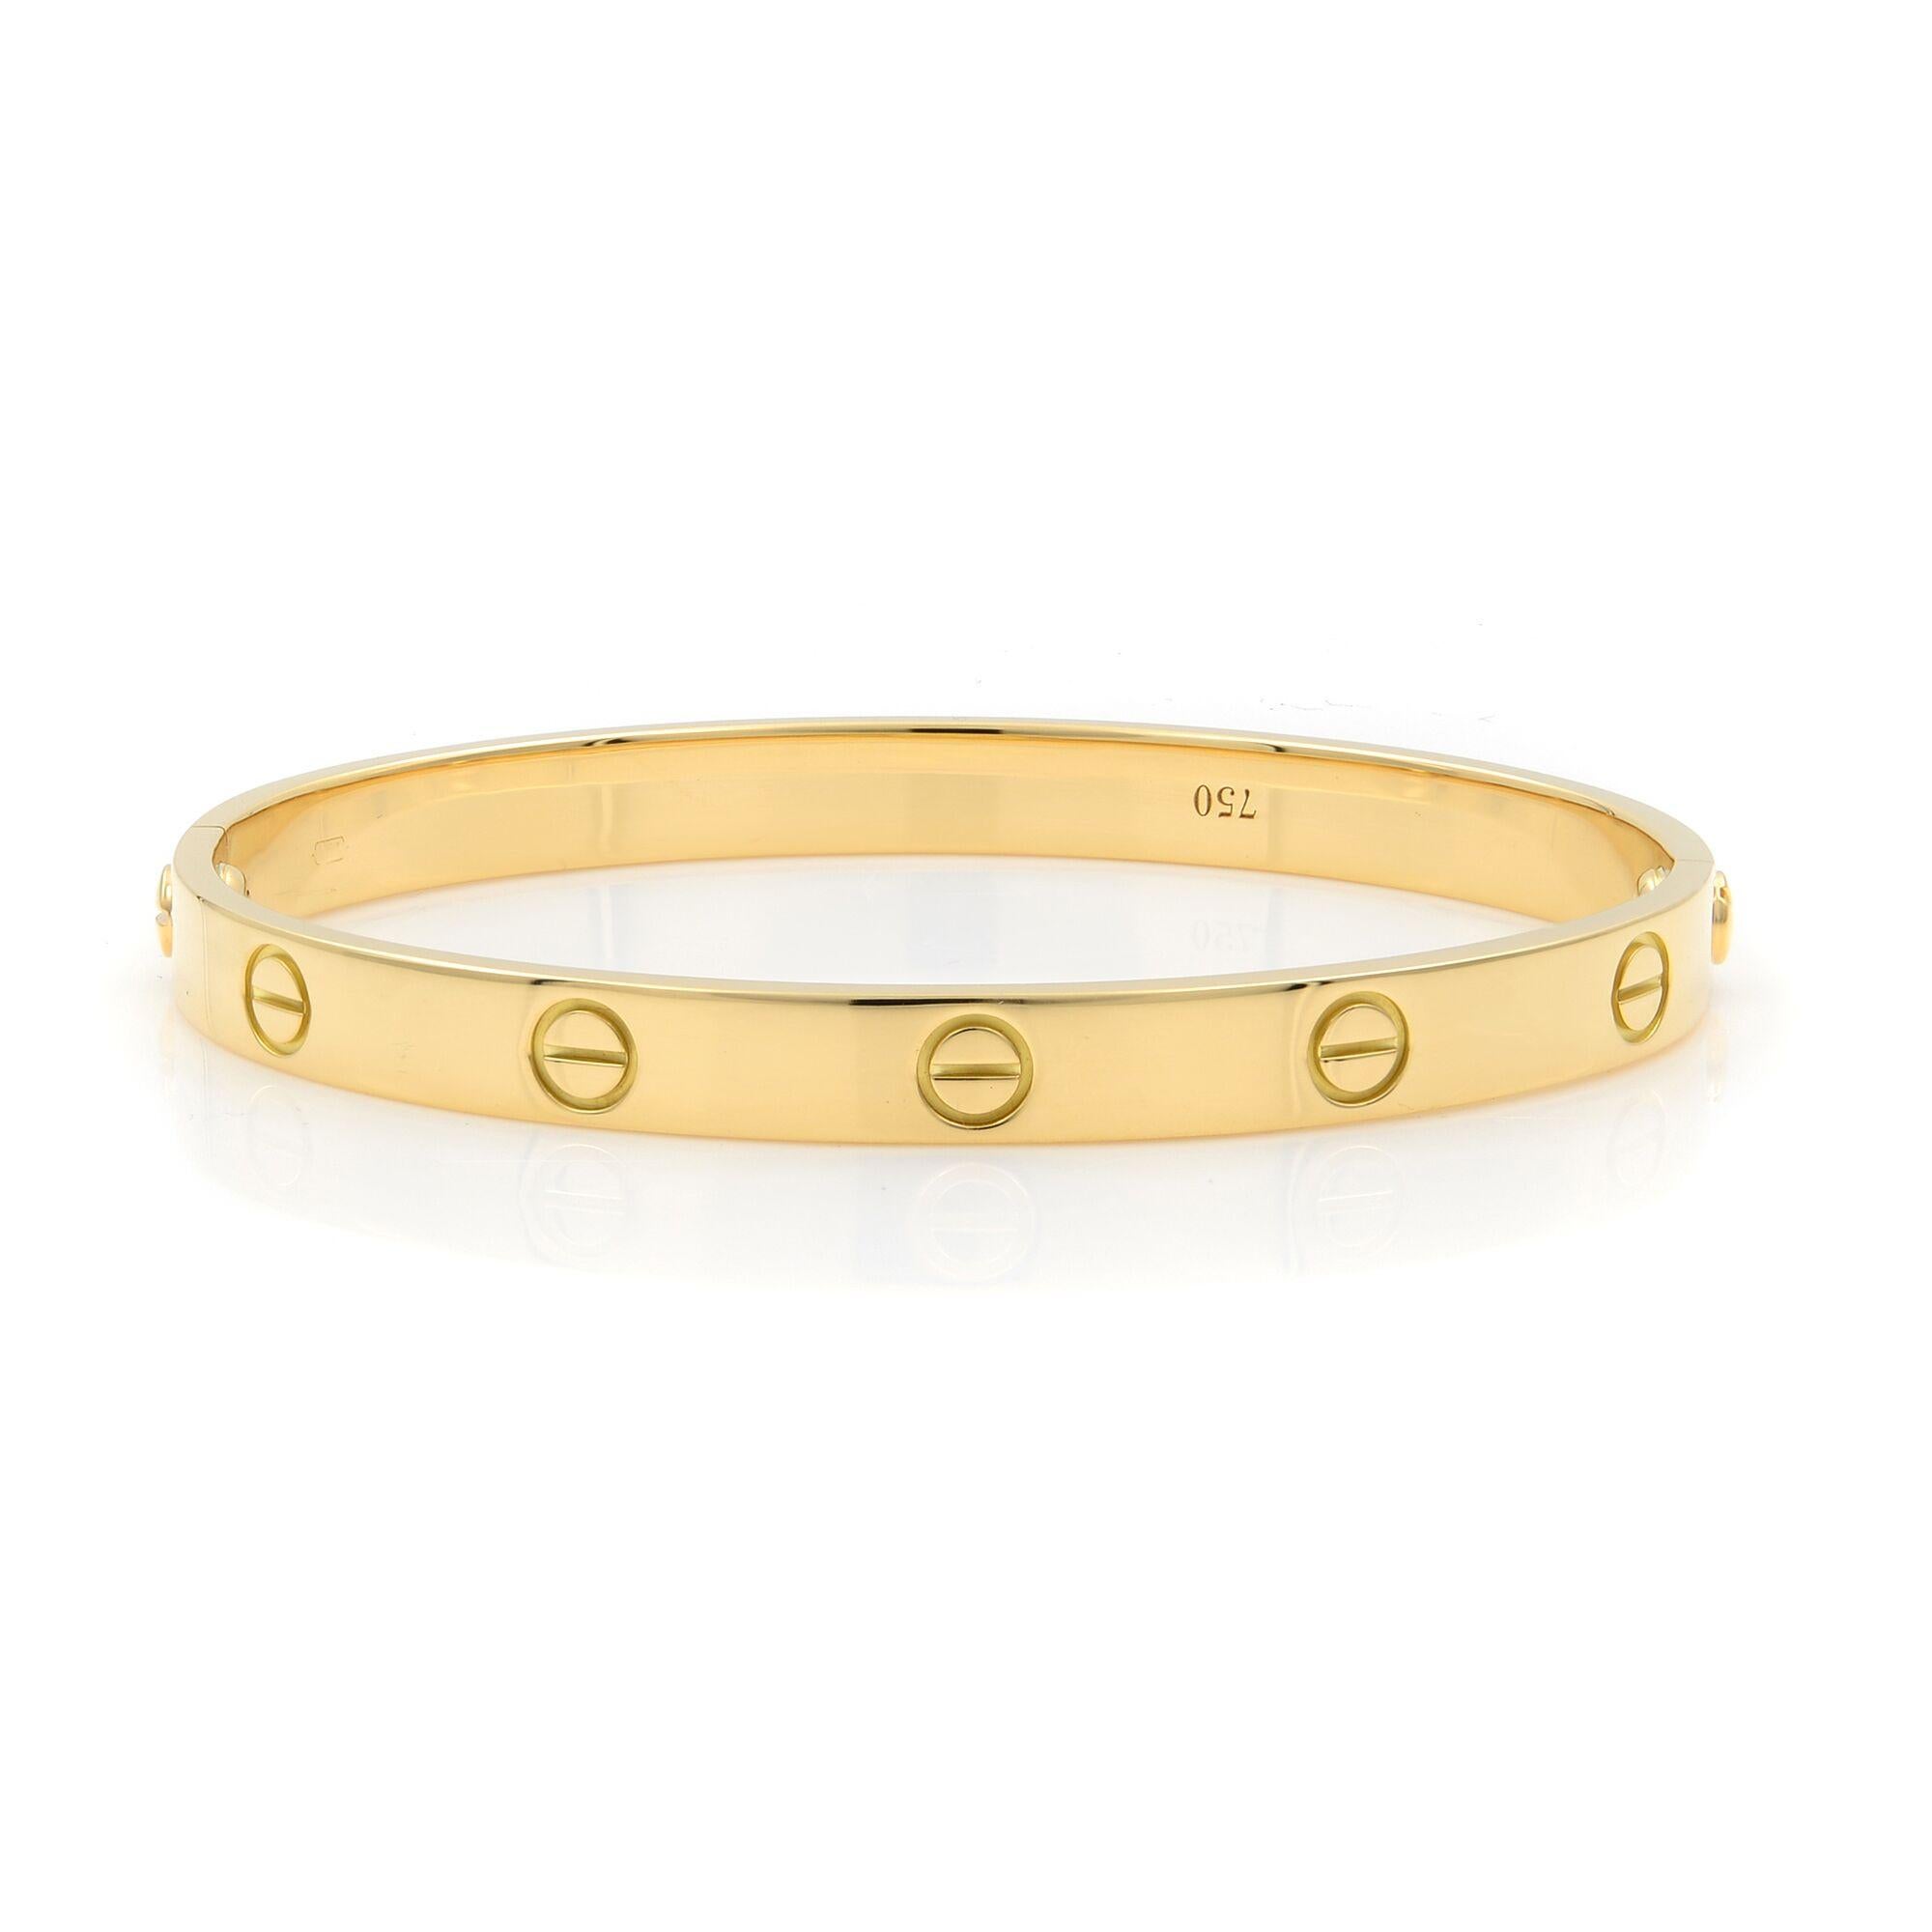 Cartier Love Bracelet Größe 18 18K Gelbgold. Altes Schraubensystem. Das Armband ist mit 